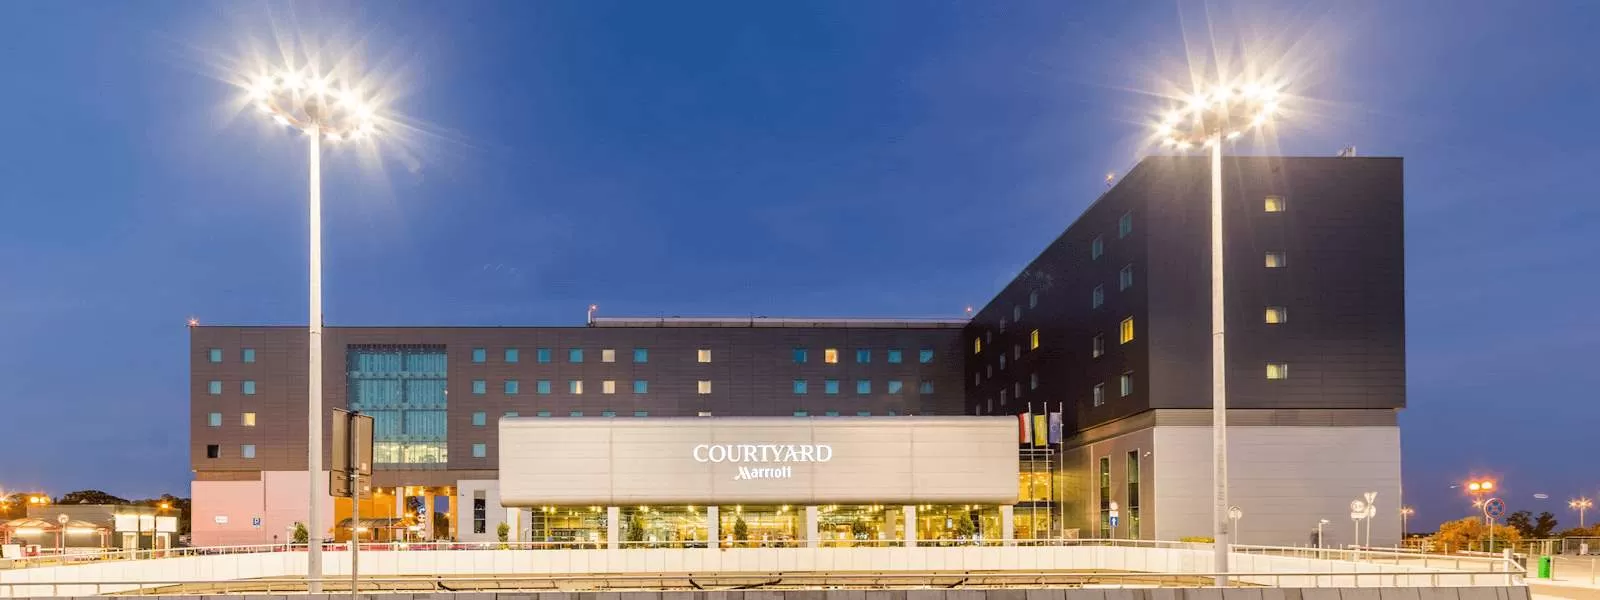 Czy Hotel Courtyard dysponuje własnym parkingiem?